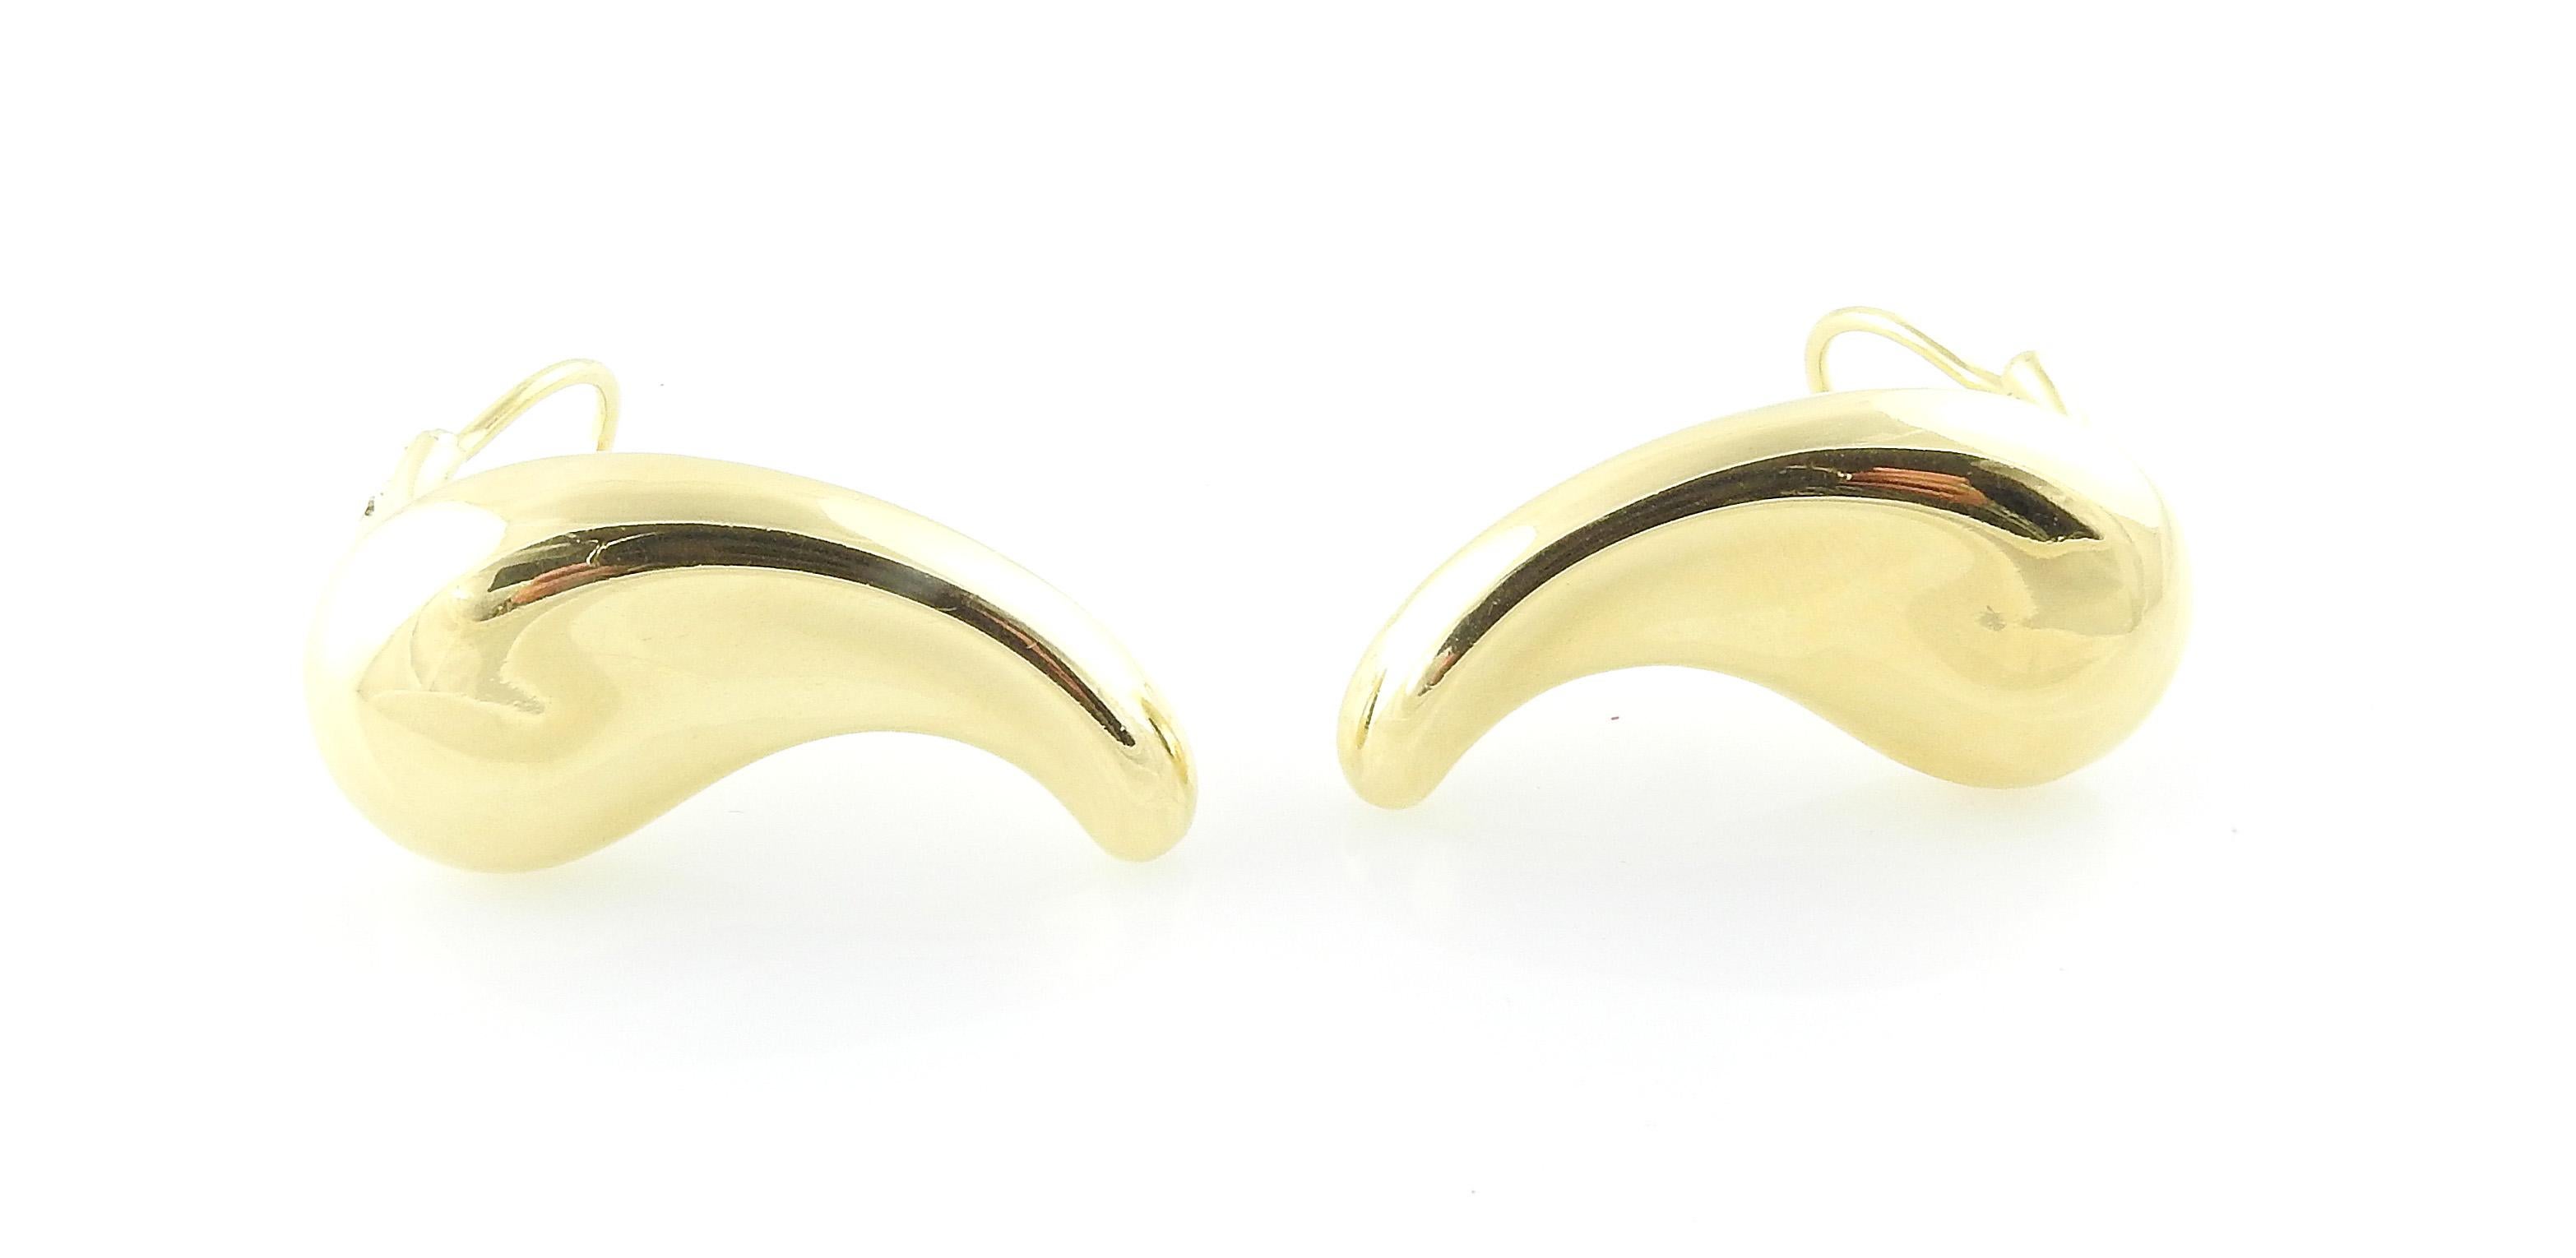 Tiffany & Co. Peretti X Große Bohnen-Ohrringe

Die Bohne ist ein klassisches Design von Elsa Peretti. Diese Bohnenohrringe haben die Größe X Large und sind für Clip-Ohrringe / nicht gepiercte Ohren gedacht. 

Die Ohrringe sind in 18 Karat Gelbgold